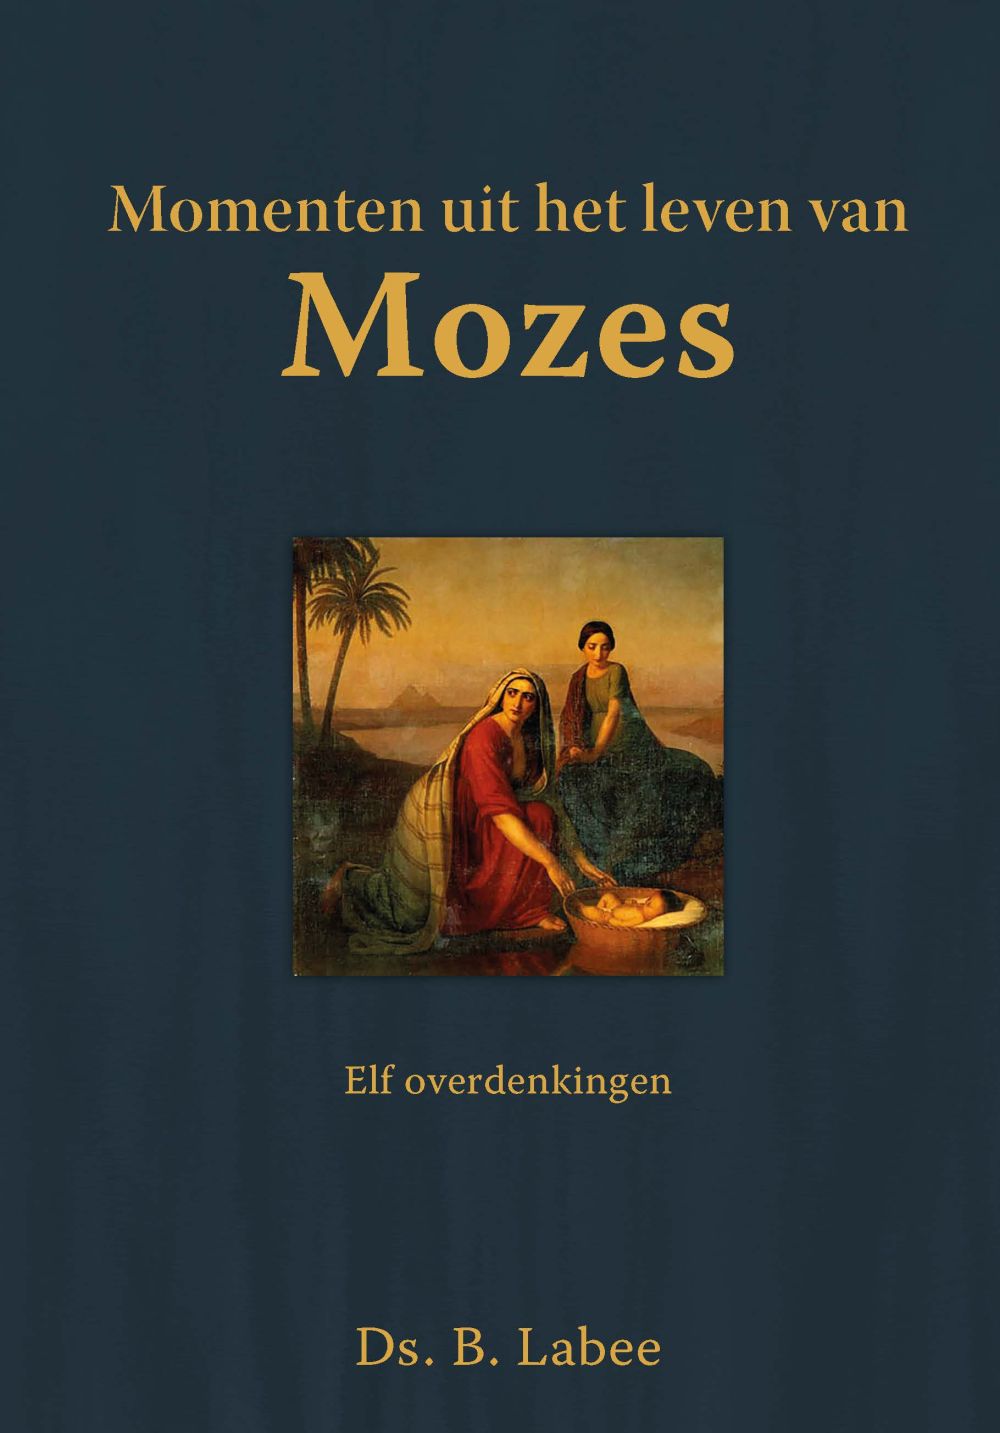 Momenten uit het leven van Mozes